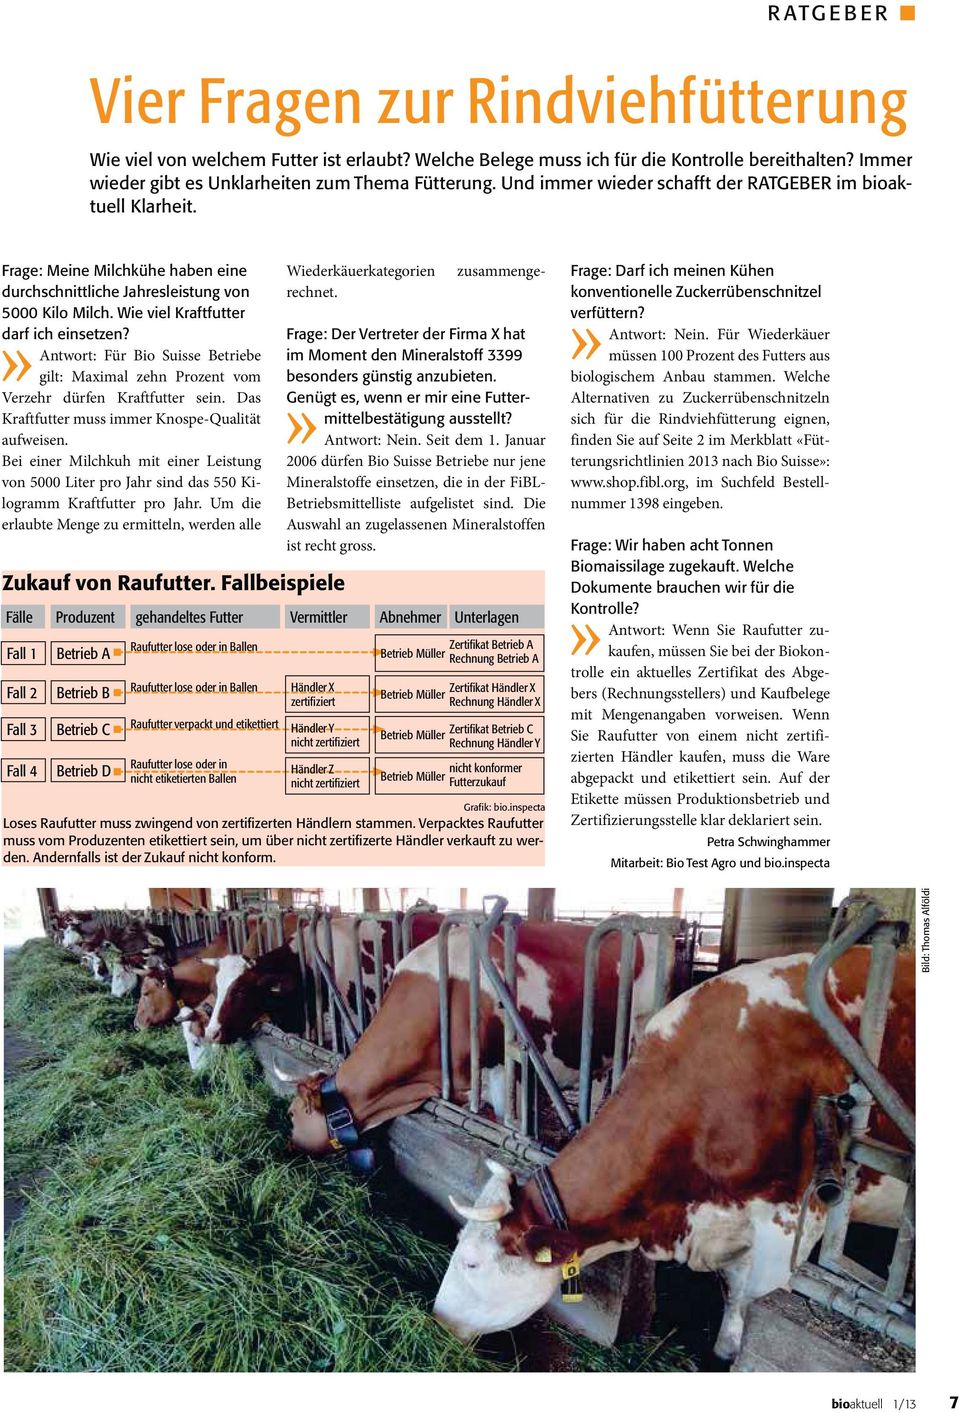 Antwort: Für Bio Suisse Betriebe gilt: Maximal zehn Prozent vom Verzehr dürfen Kraftfutter sein. Das Kraftfutter muss immer Knospe-Qualität aufweisen.